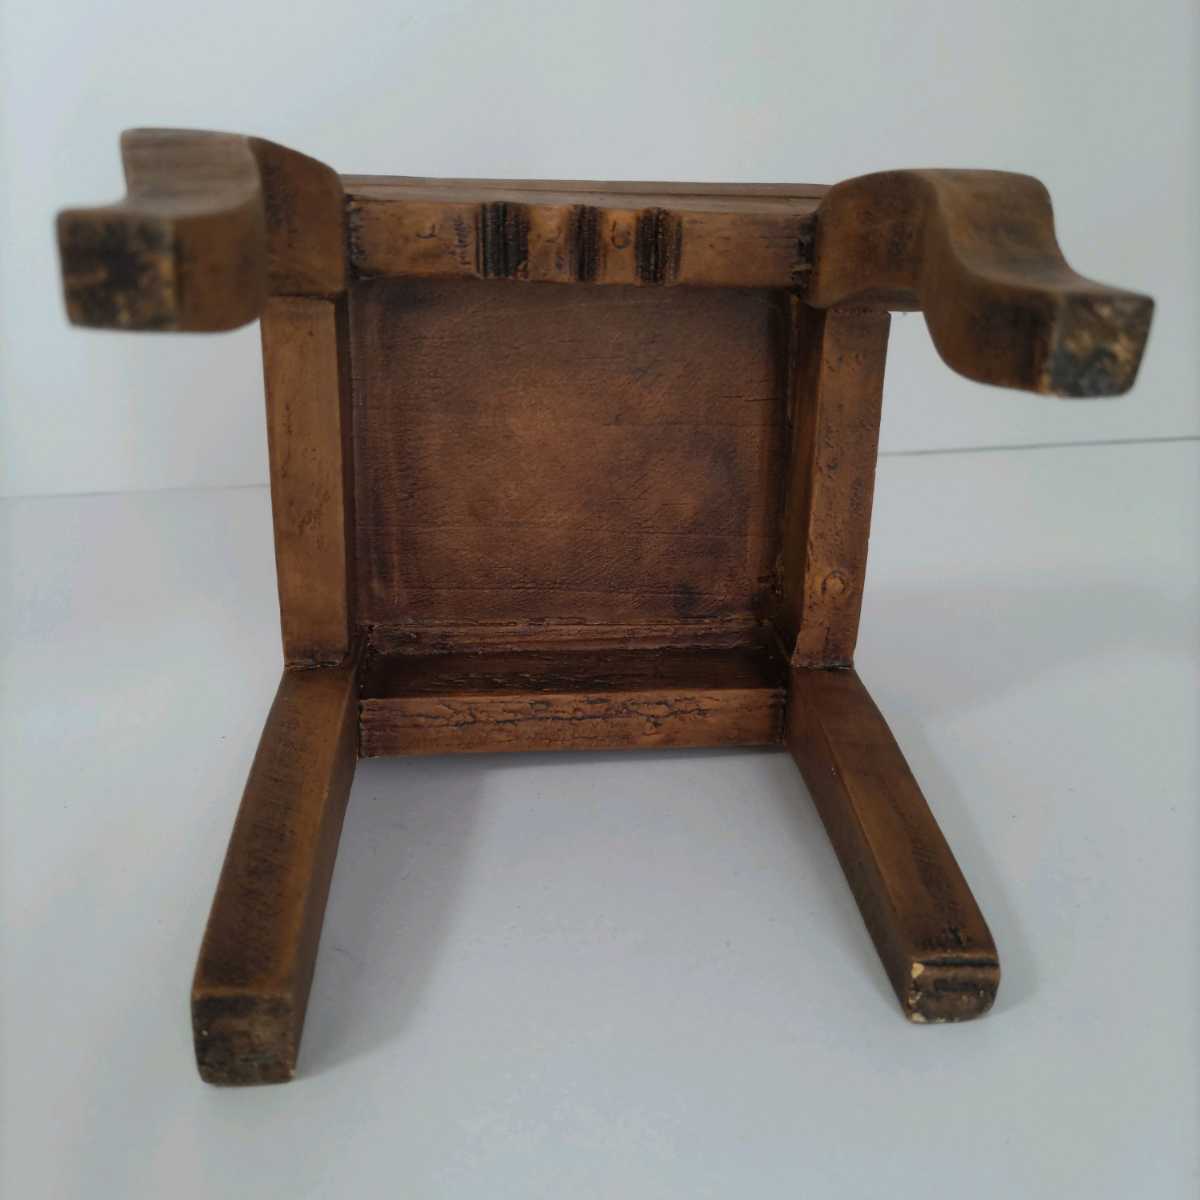 人形用 椅子 イス アンティーク レトロ 木製 27.5cm 人形は商品に含まれません